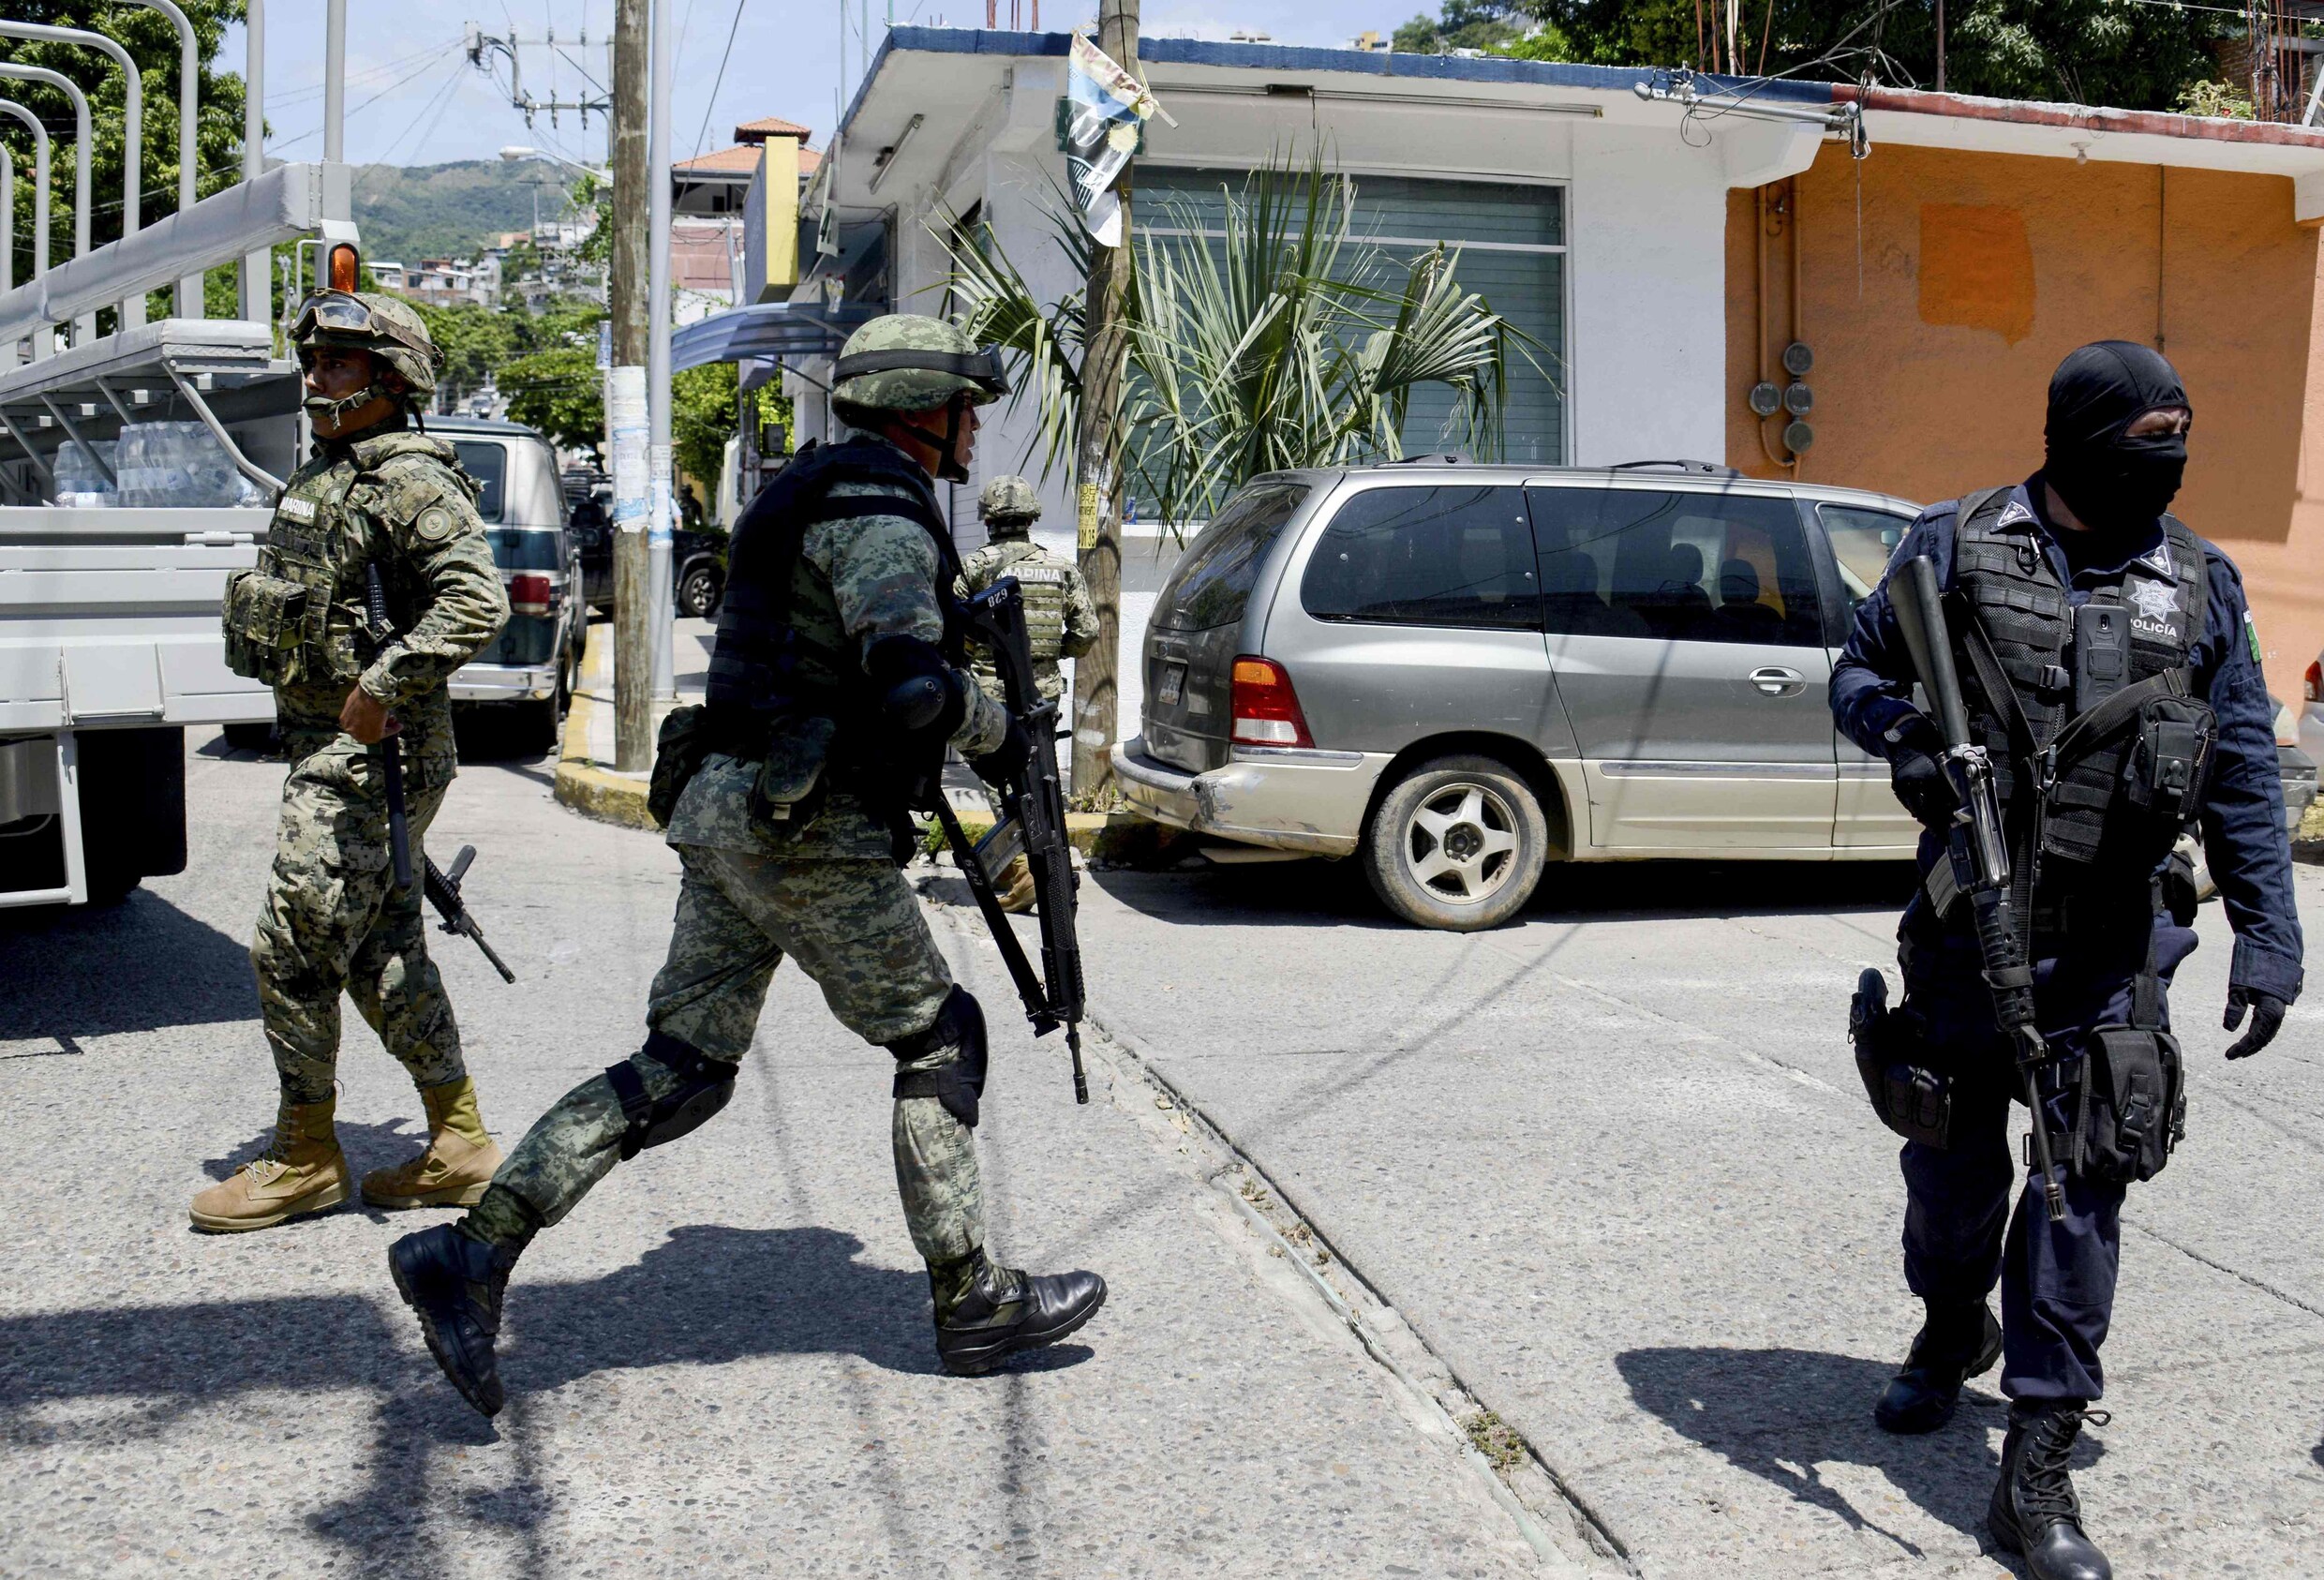 Politie van Acapulco ontwapend en onderzocht na vrees over infiltratie door drugbendes